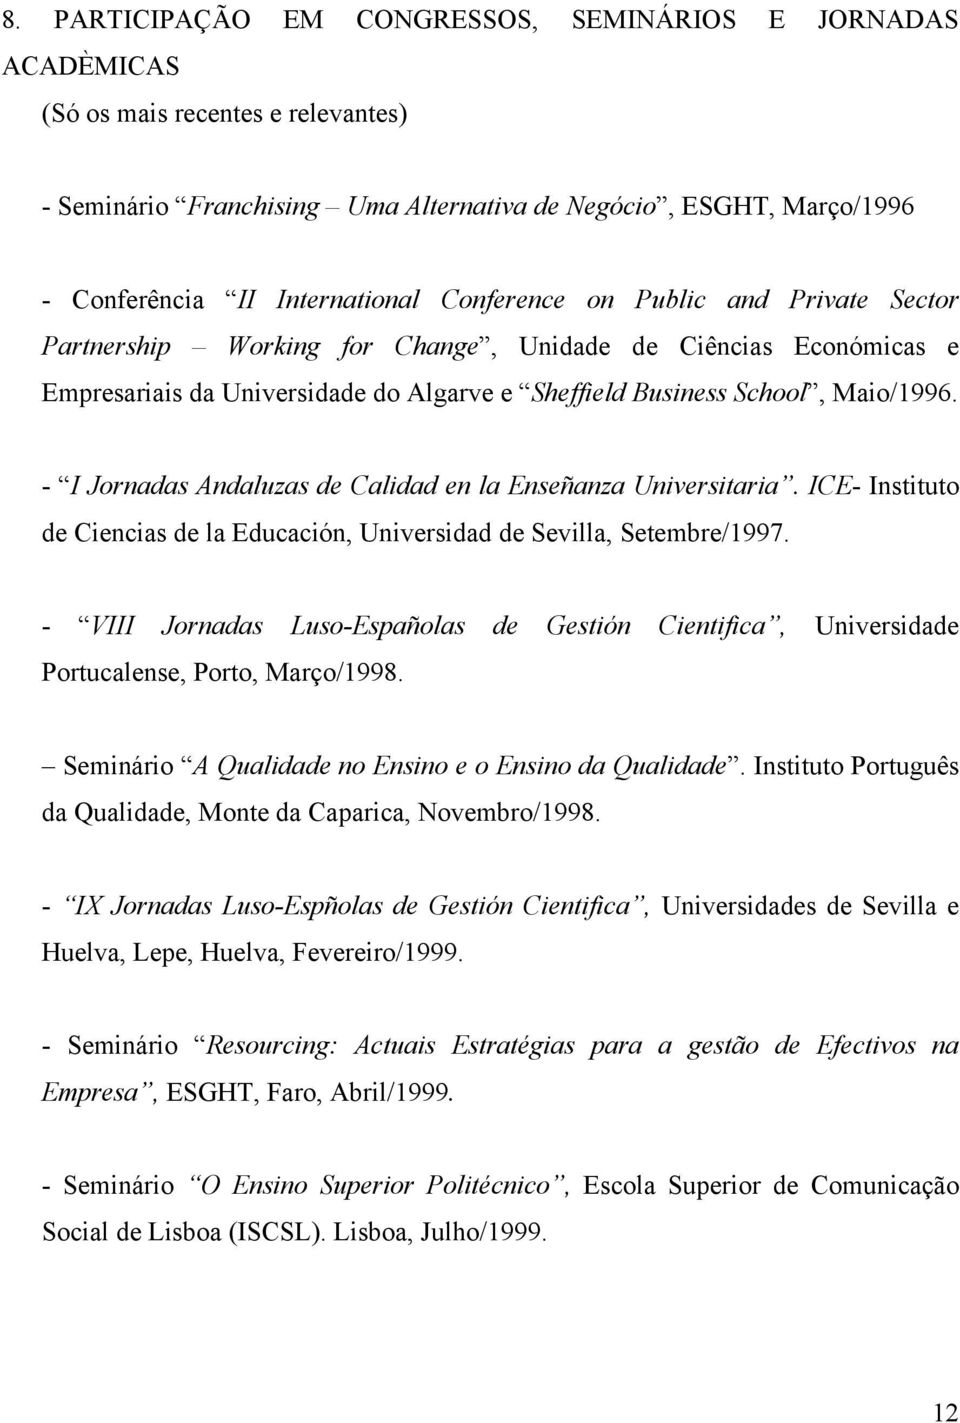 - I Jornadas Andaluzas de Calidad en la Enseñanza Universitaria. ICE- Instituto de Ciencias de la Educación, Universidad de Sevilla, Setembre/1997.